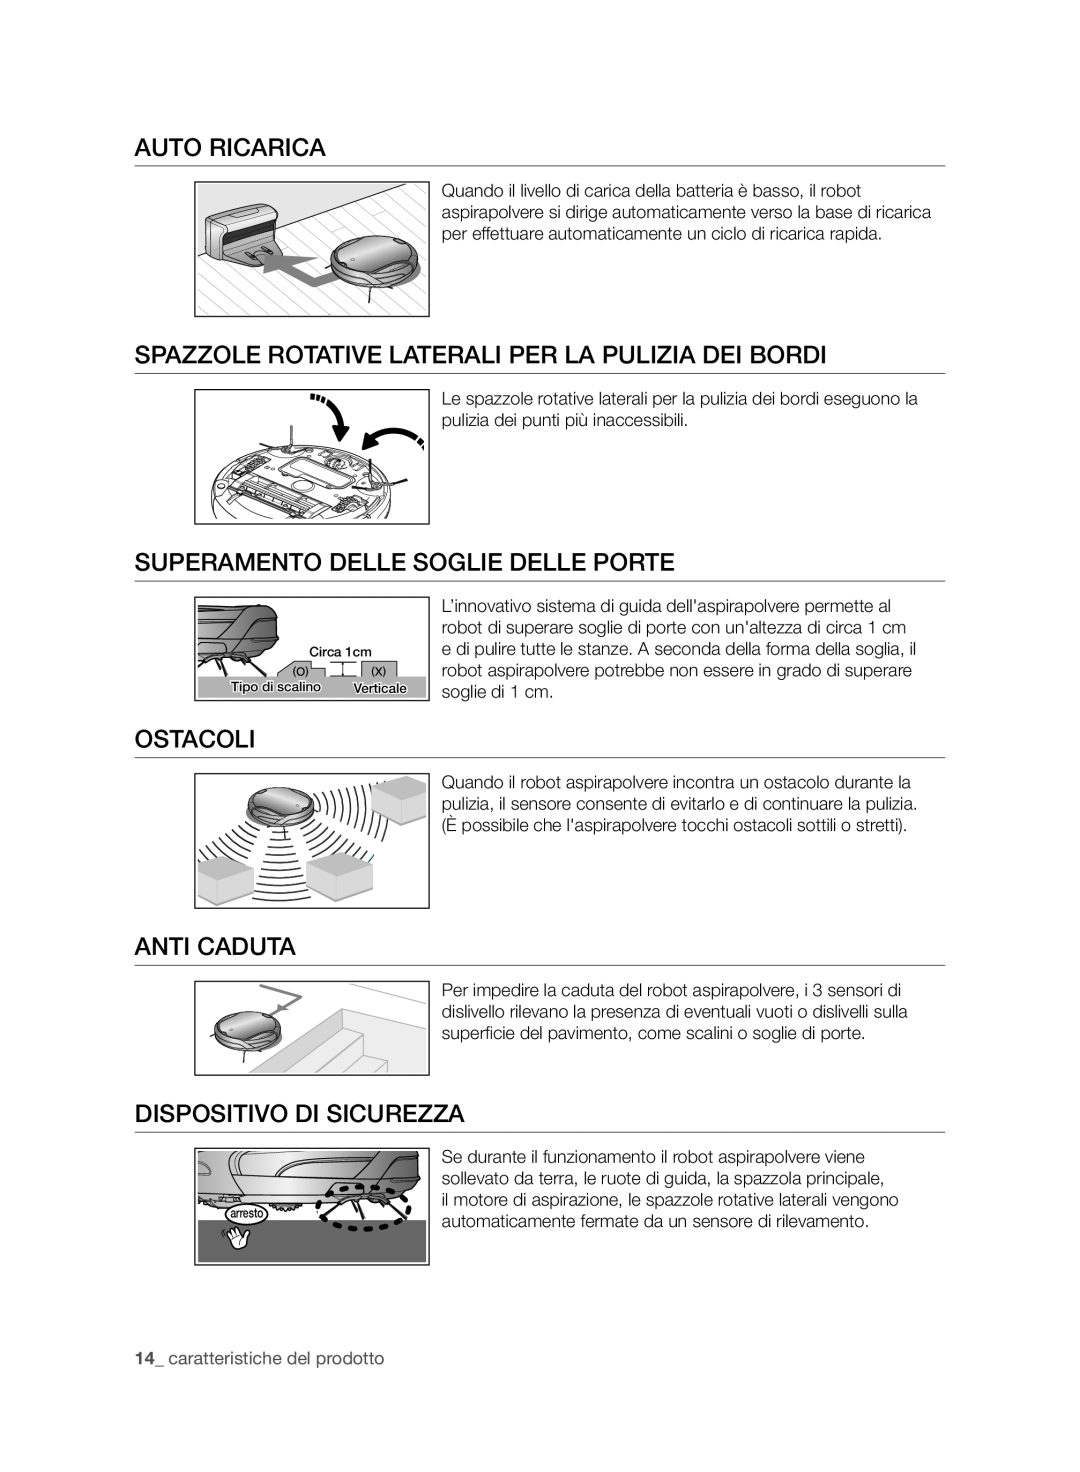 Samsung VCR8950L3B/XEO manual Auto Ricarica, Spazzole Rotative Laterali Per La Pulizia Dei Bordi, Ostacoli, Anti Caduta 